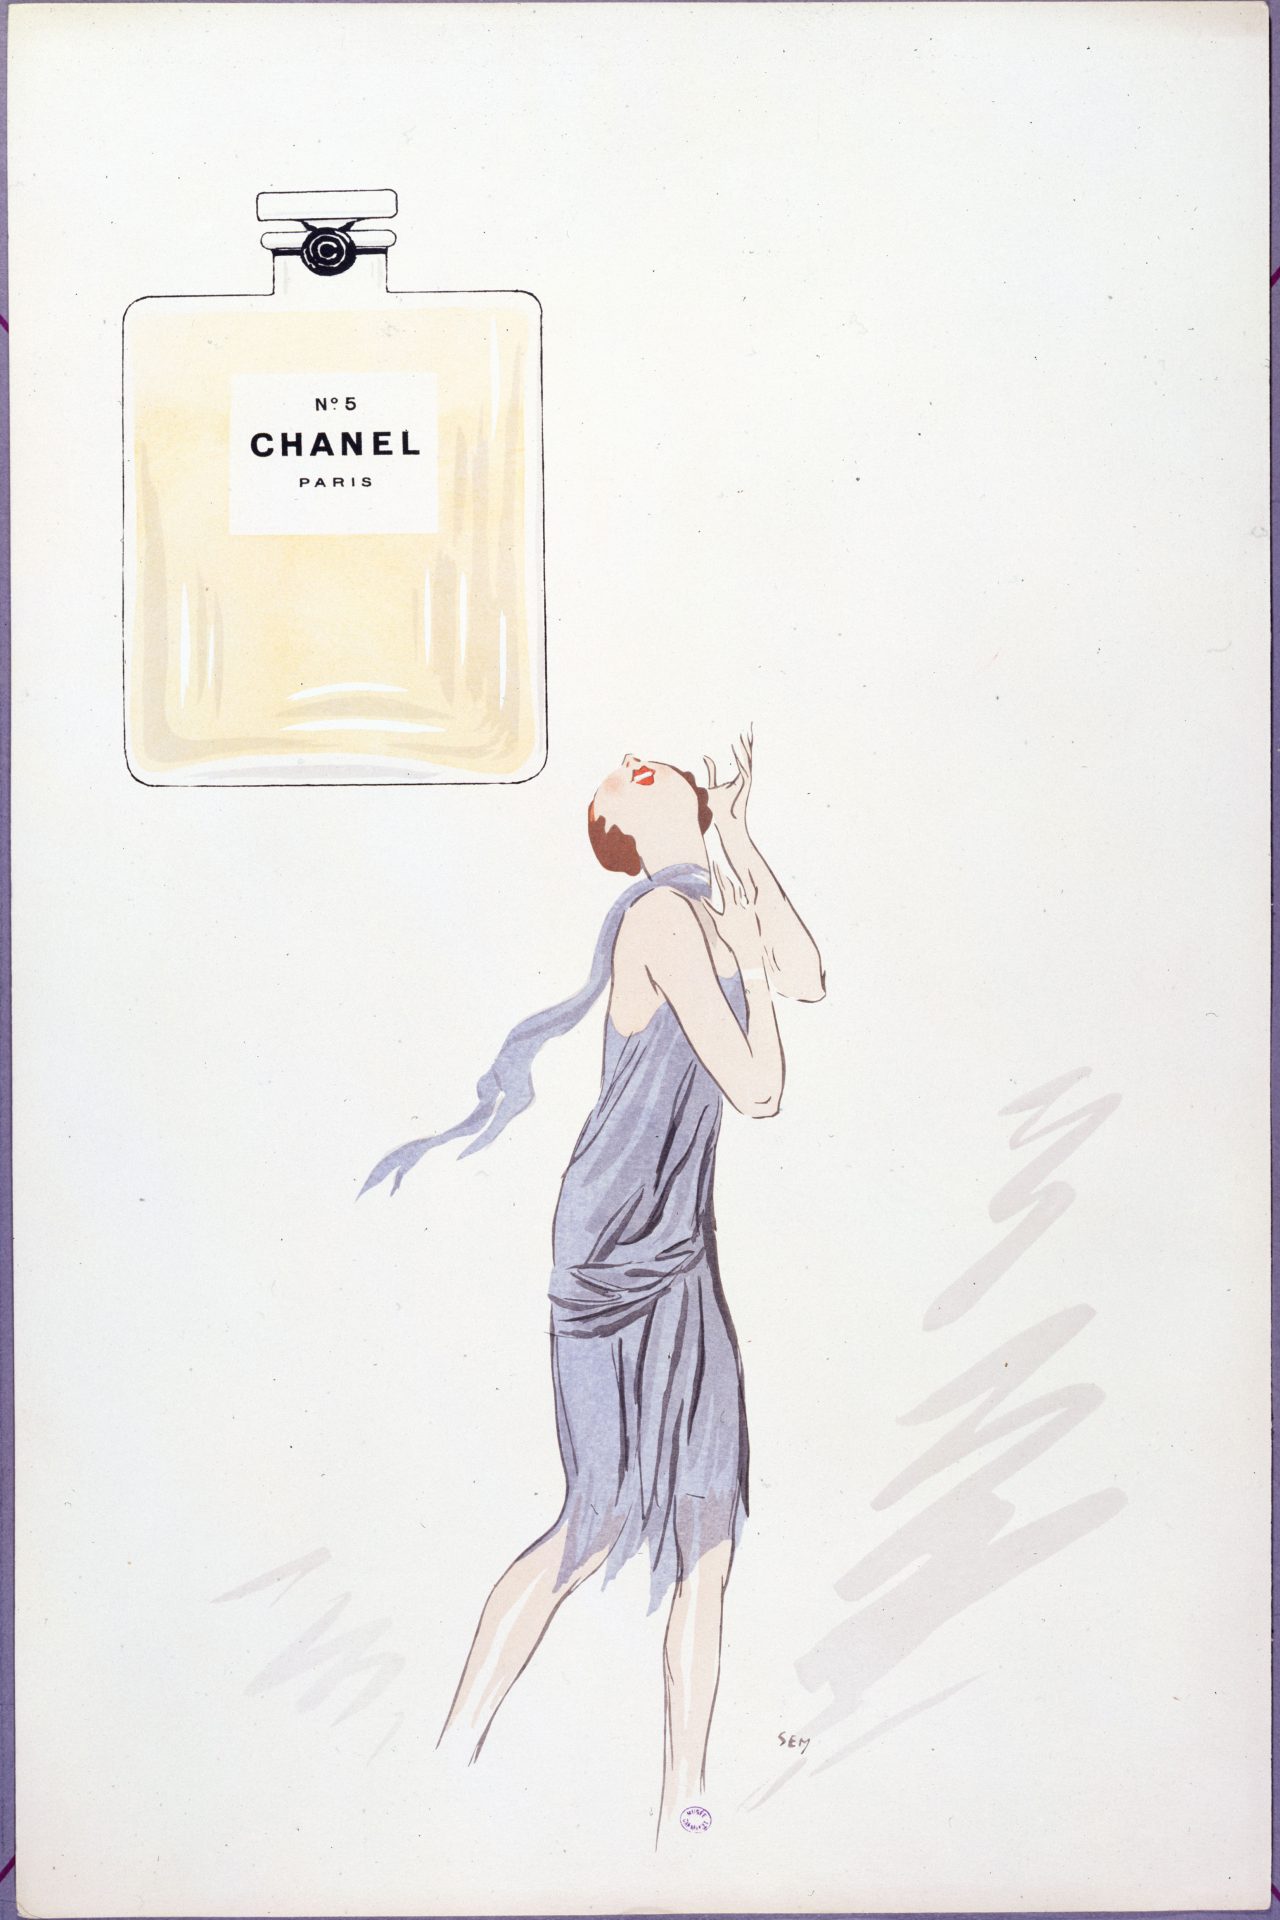 Il profumo Chanel No. 5 è stato lanciato nel 1921